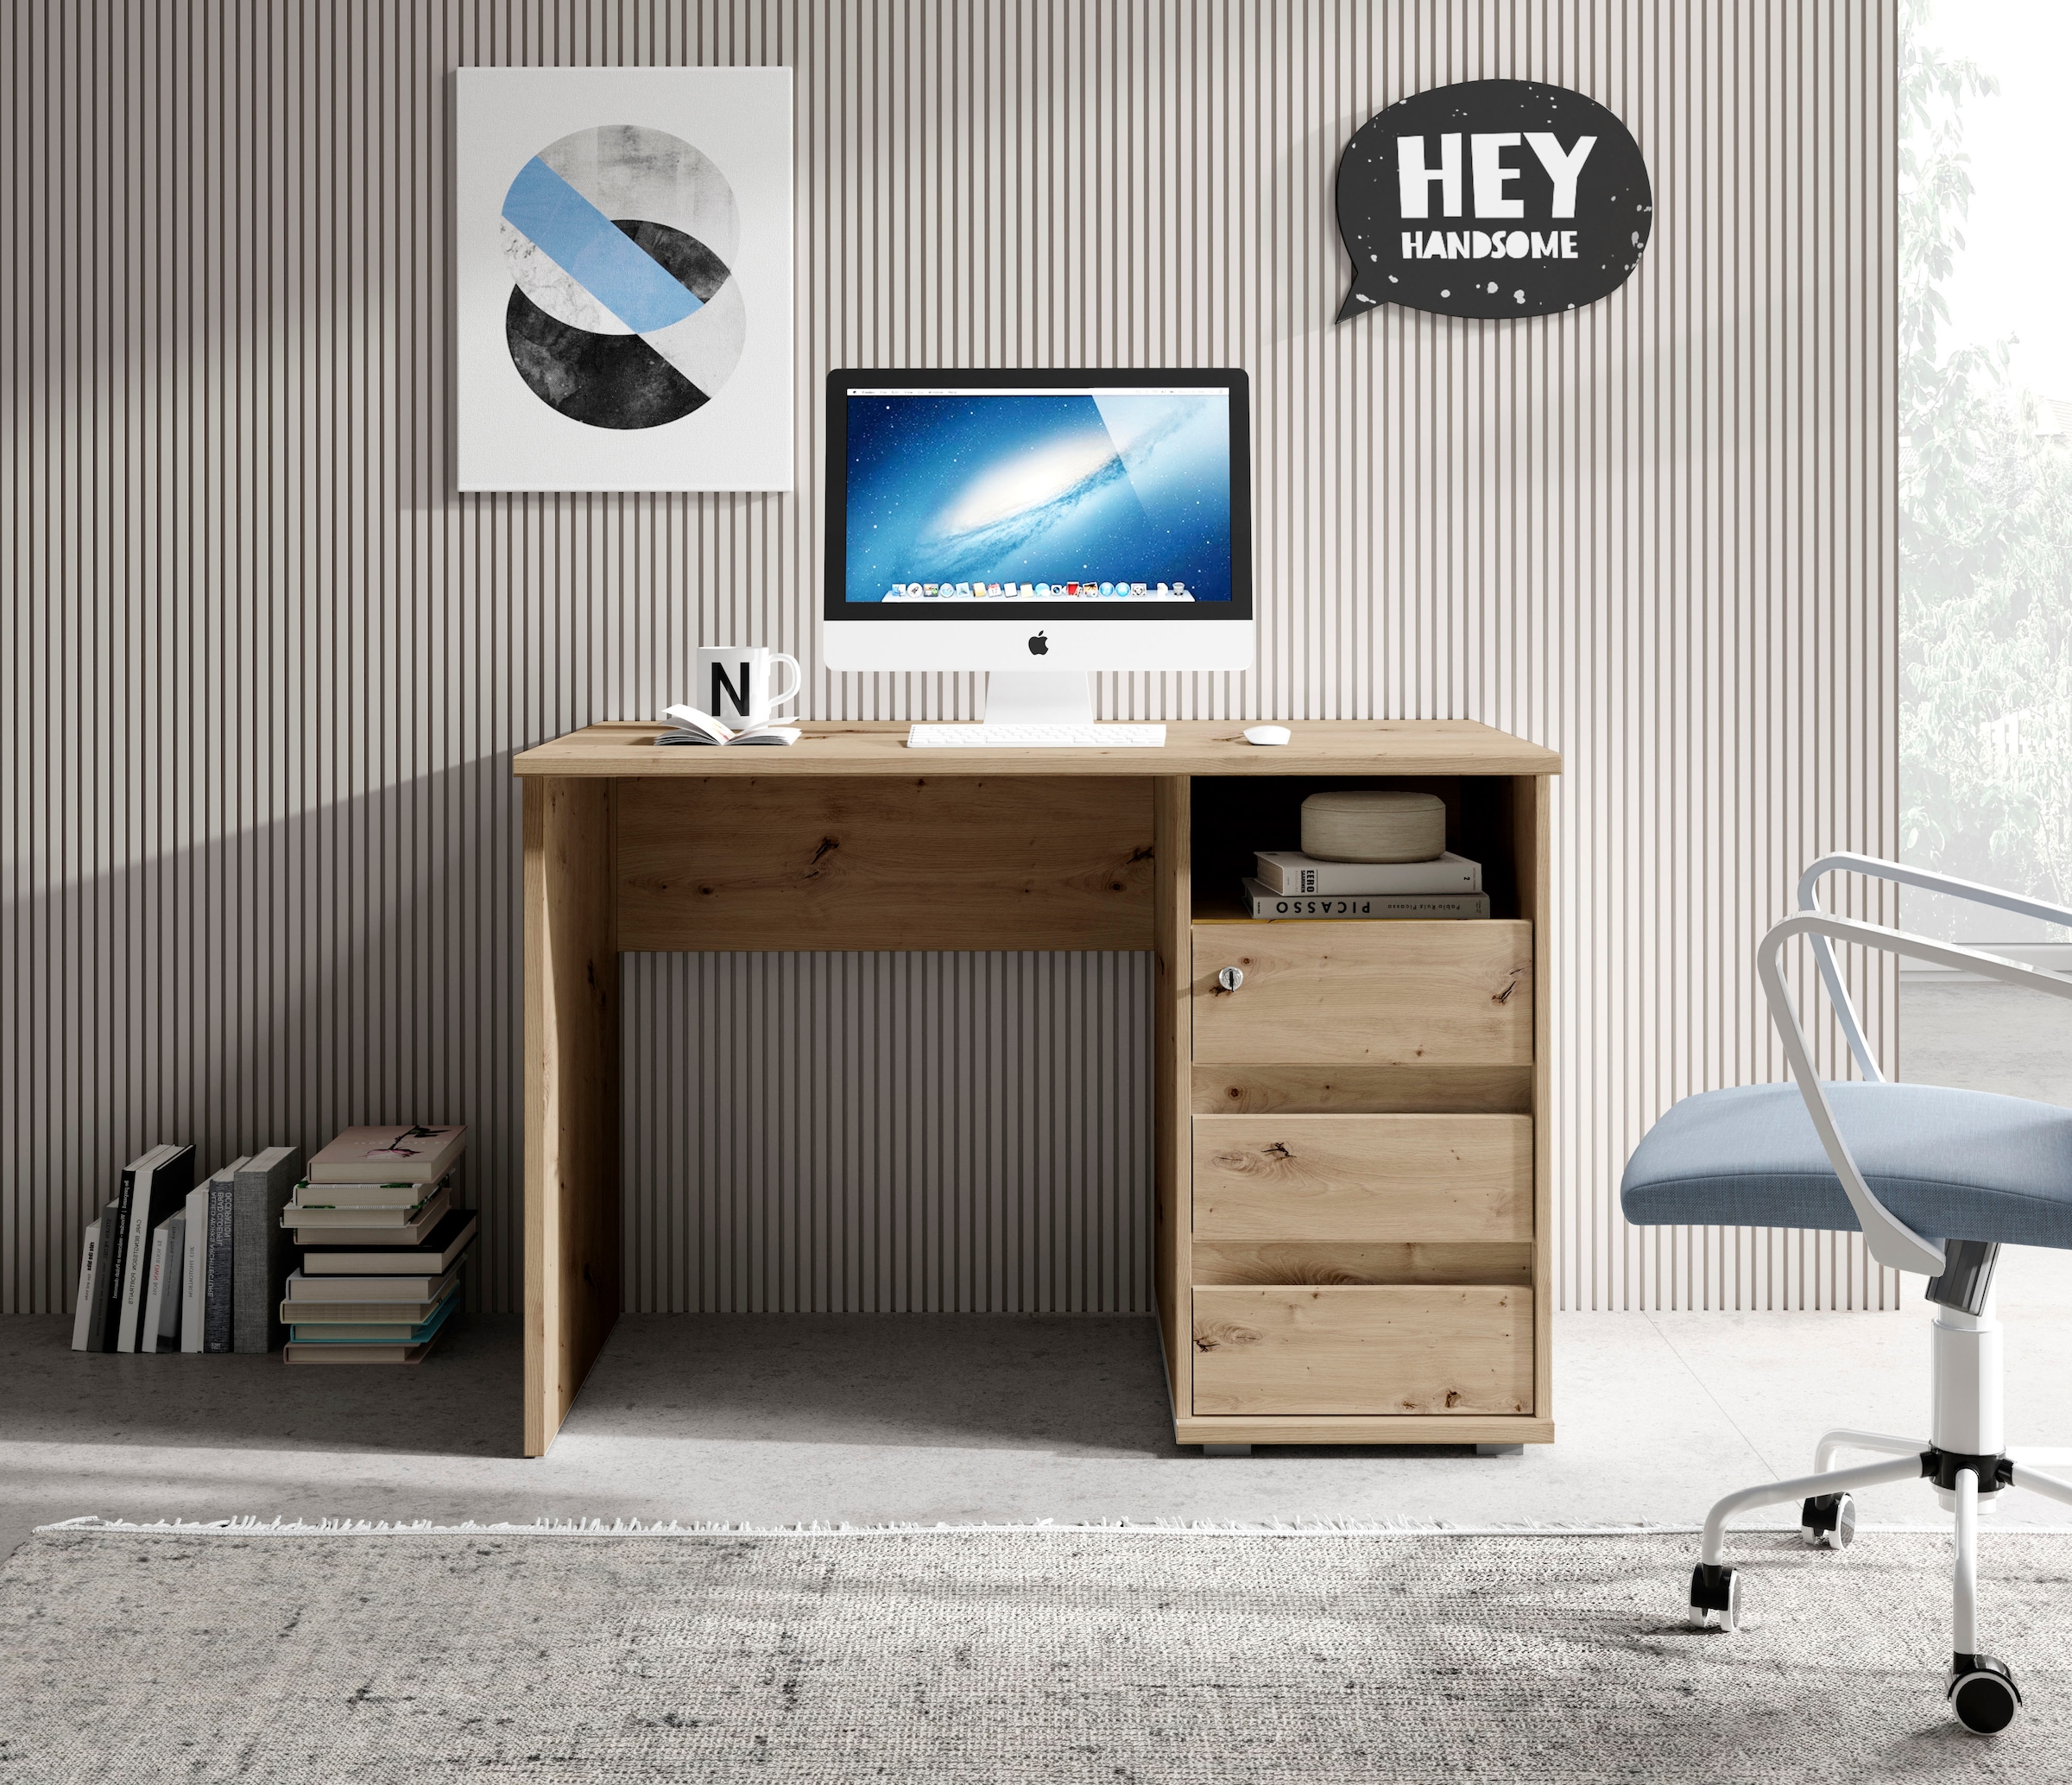 BEGA OFFICE Schreibtisch »Primus 1«, mit Schubkasten abschließbar in 3 Farbausführungen